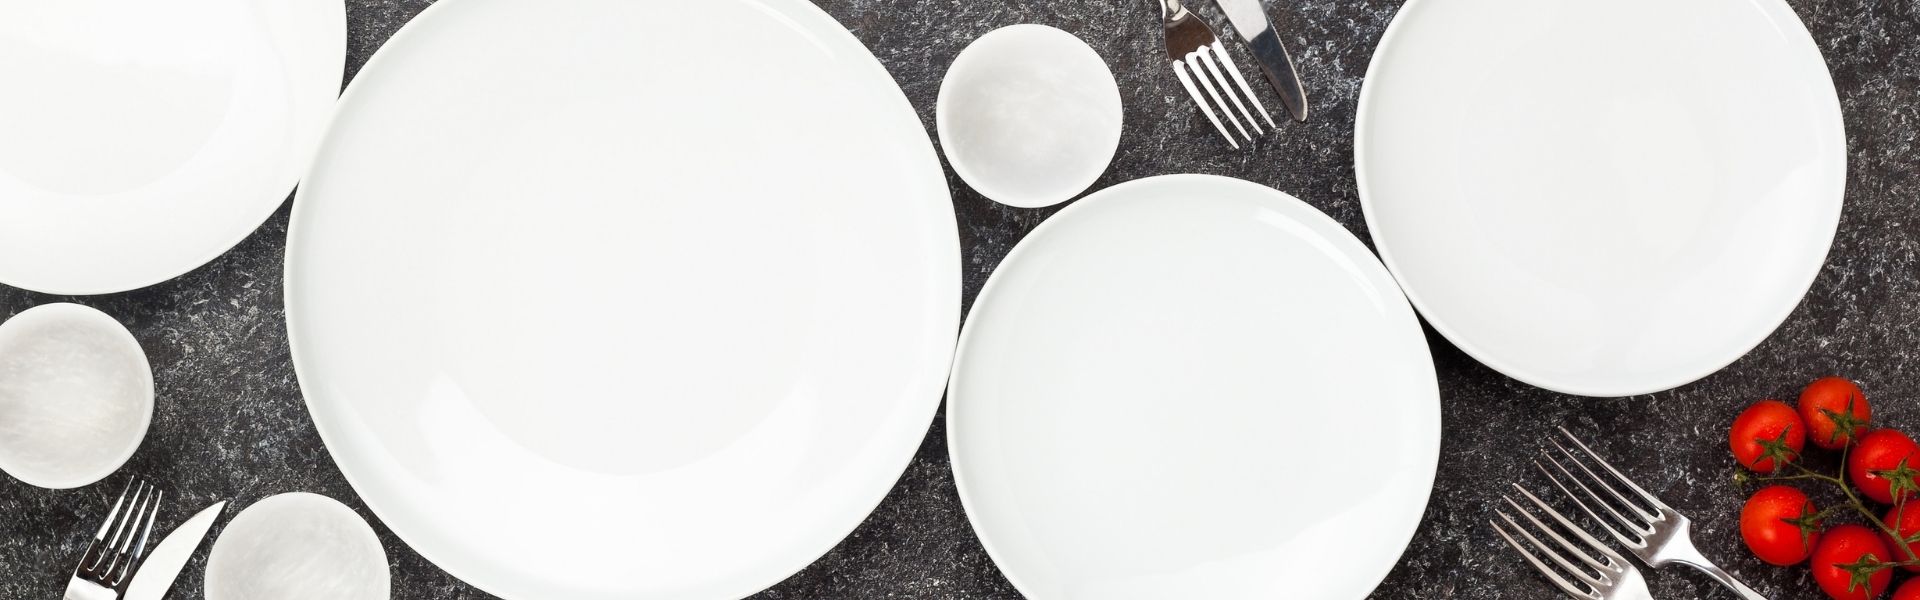 Gedeckter Tisch Teller und Besteck auf dunklem Hintergrund